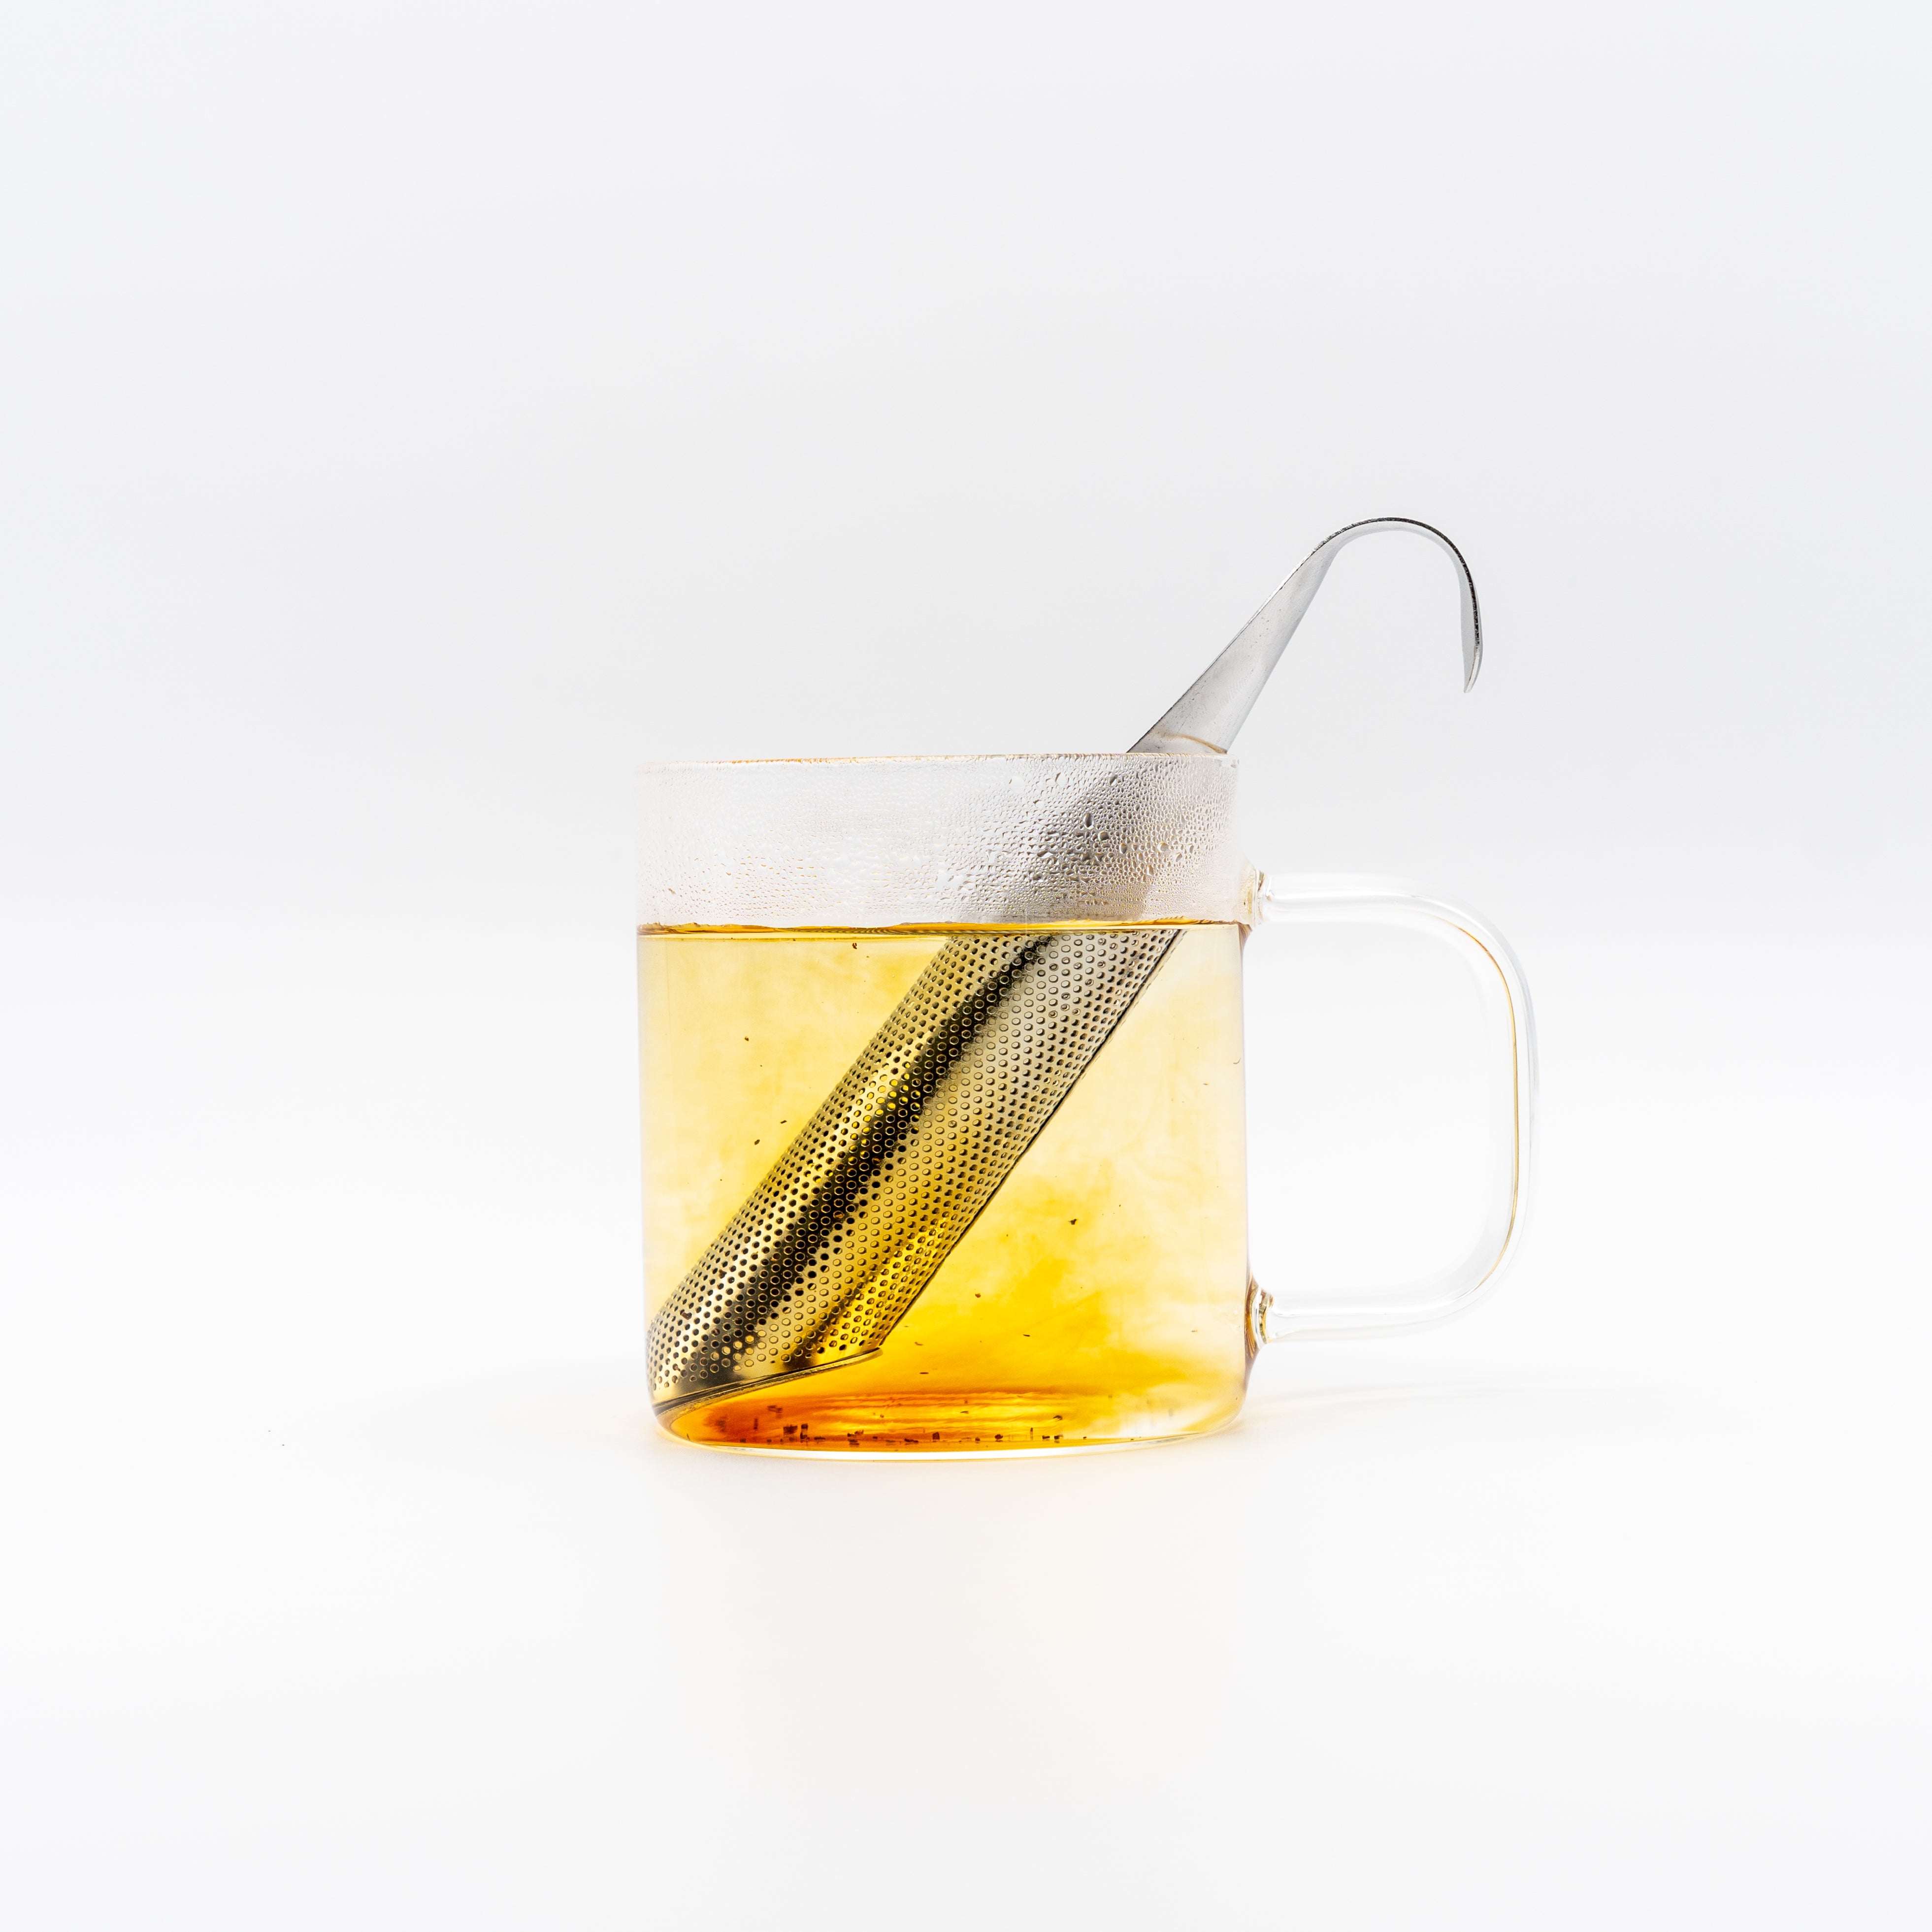 Tea Infuser